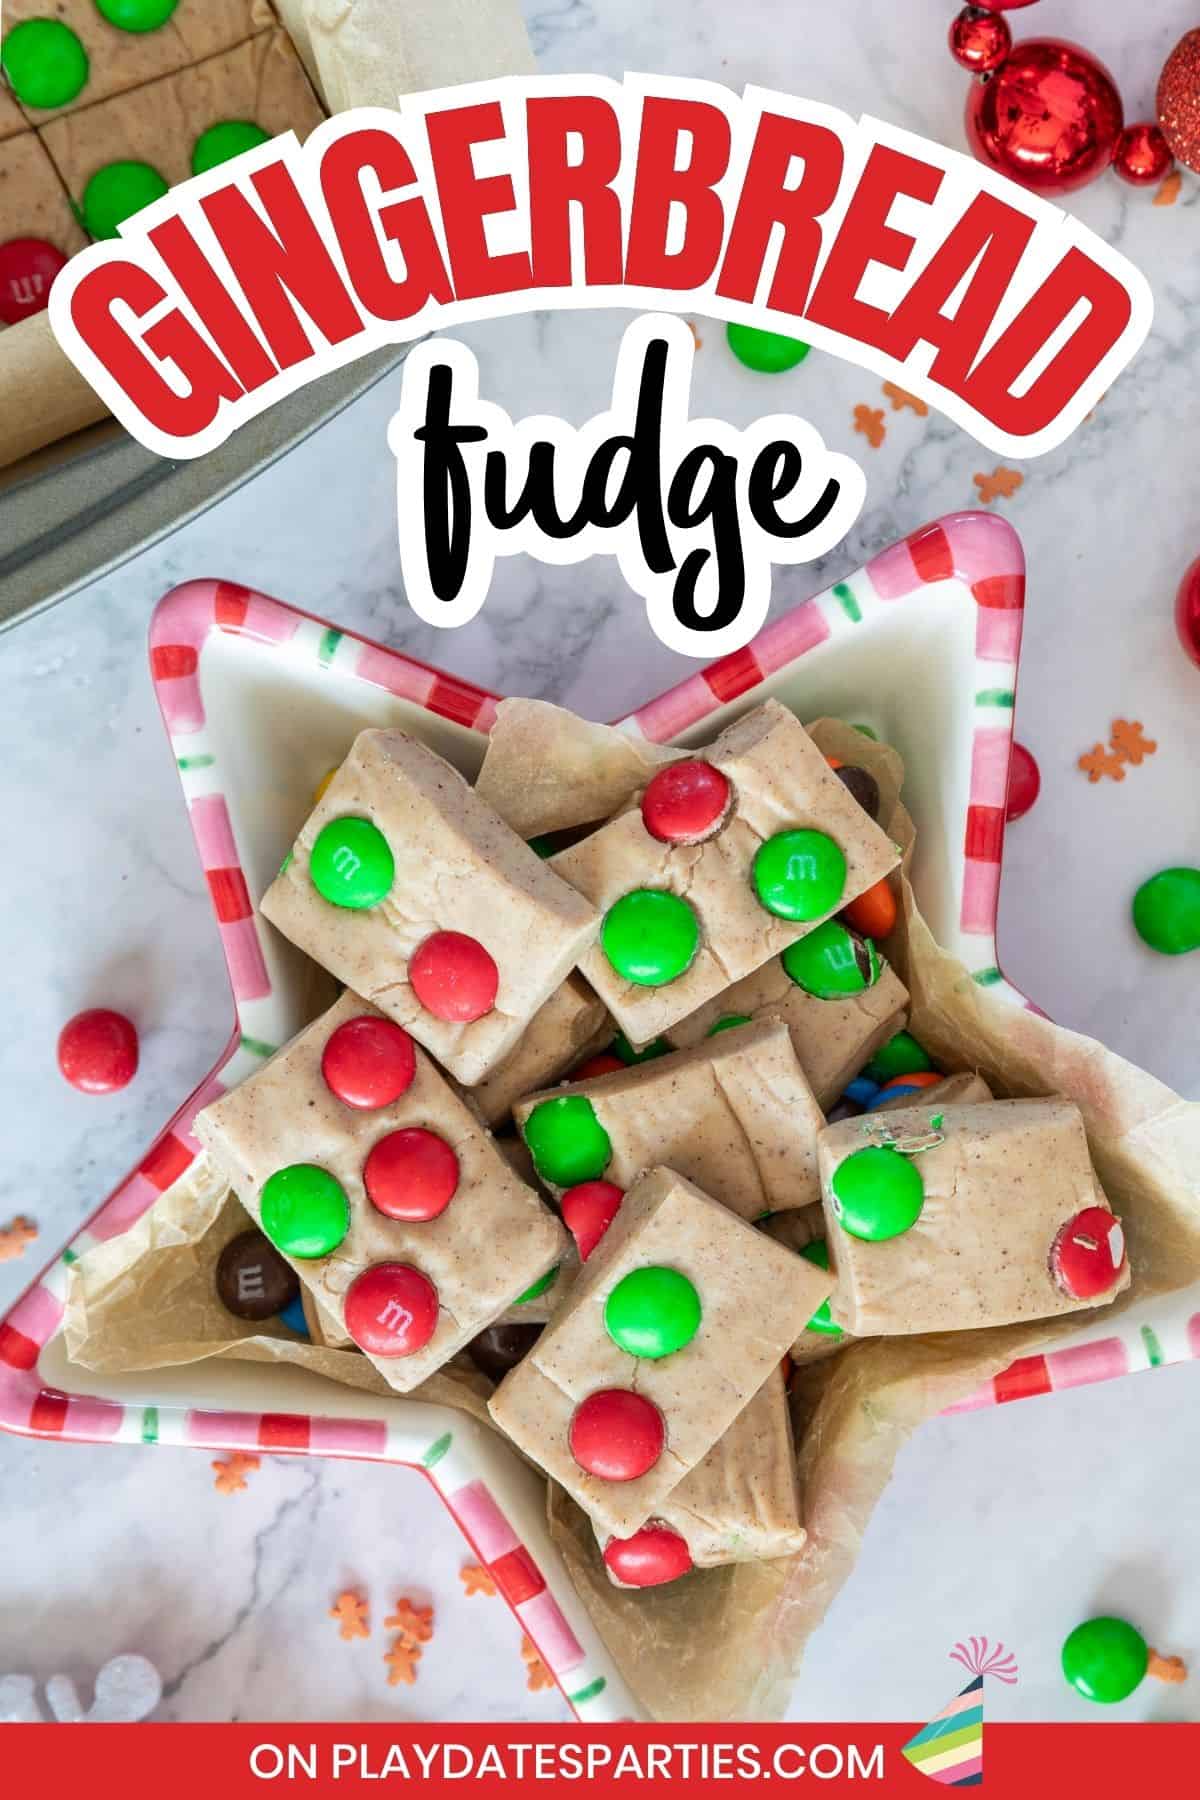 Gingerbread fudge pin image.